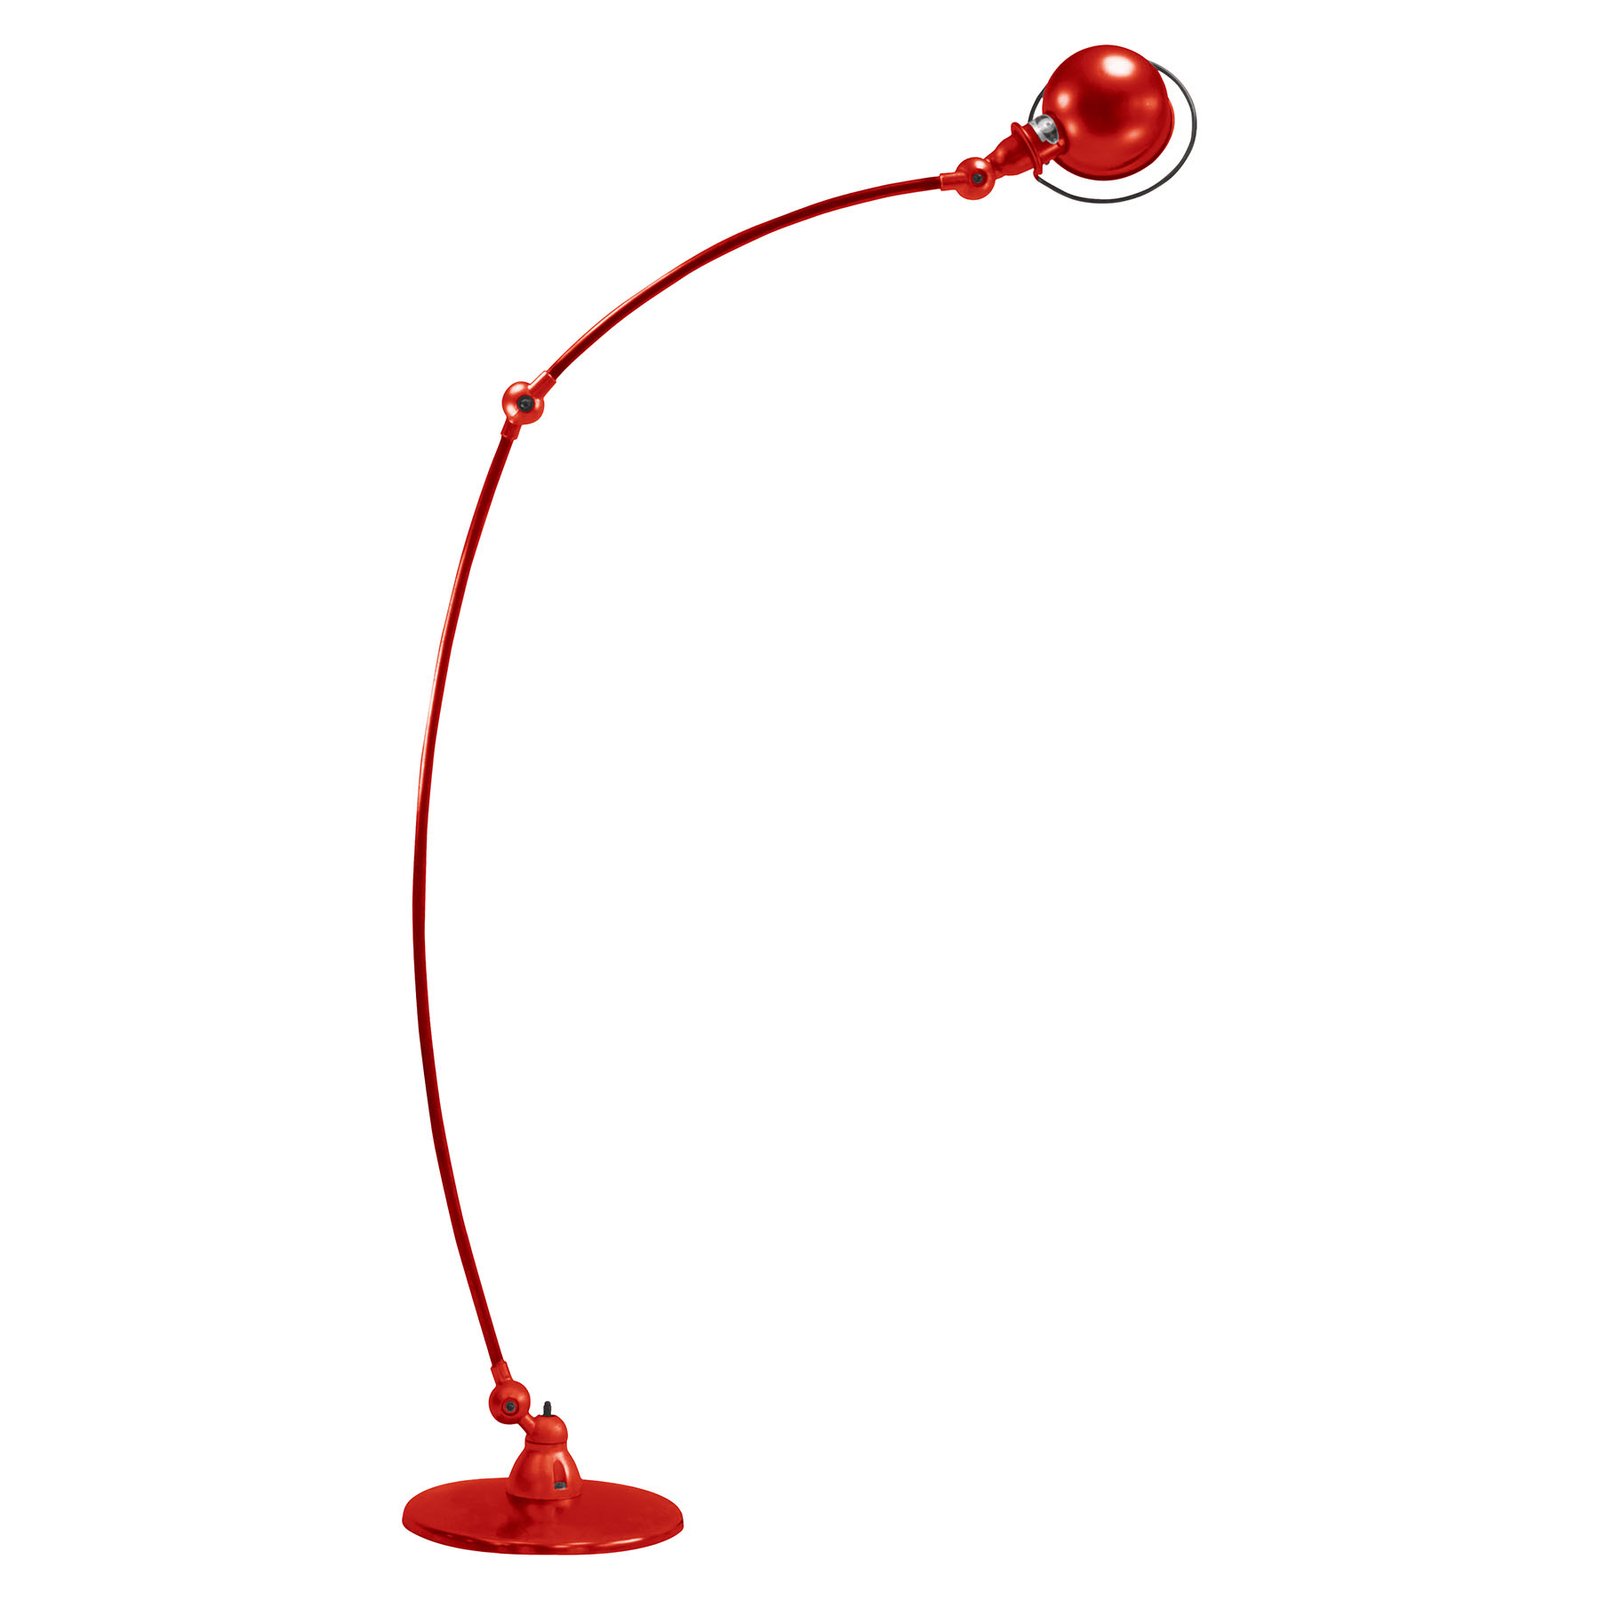 Jieldé Loft C1260 arc floor lamp, red